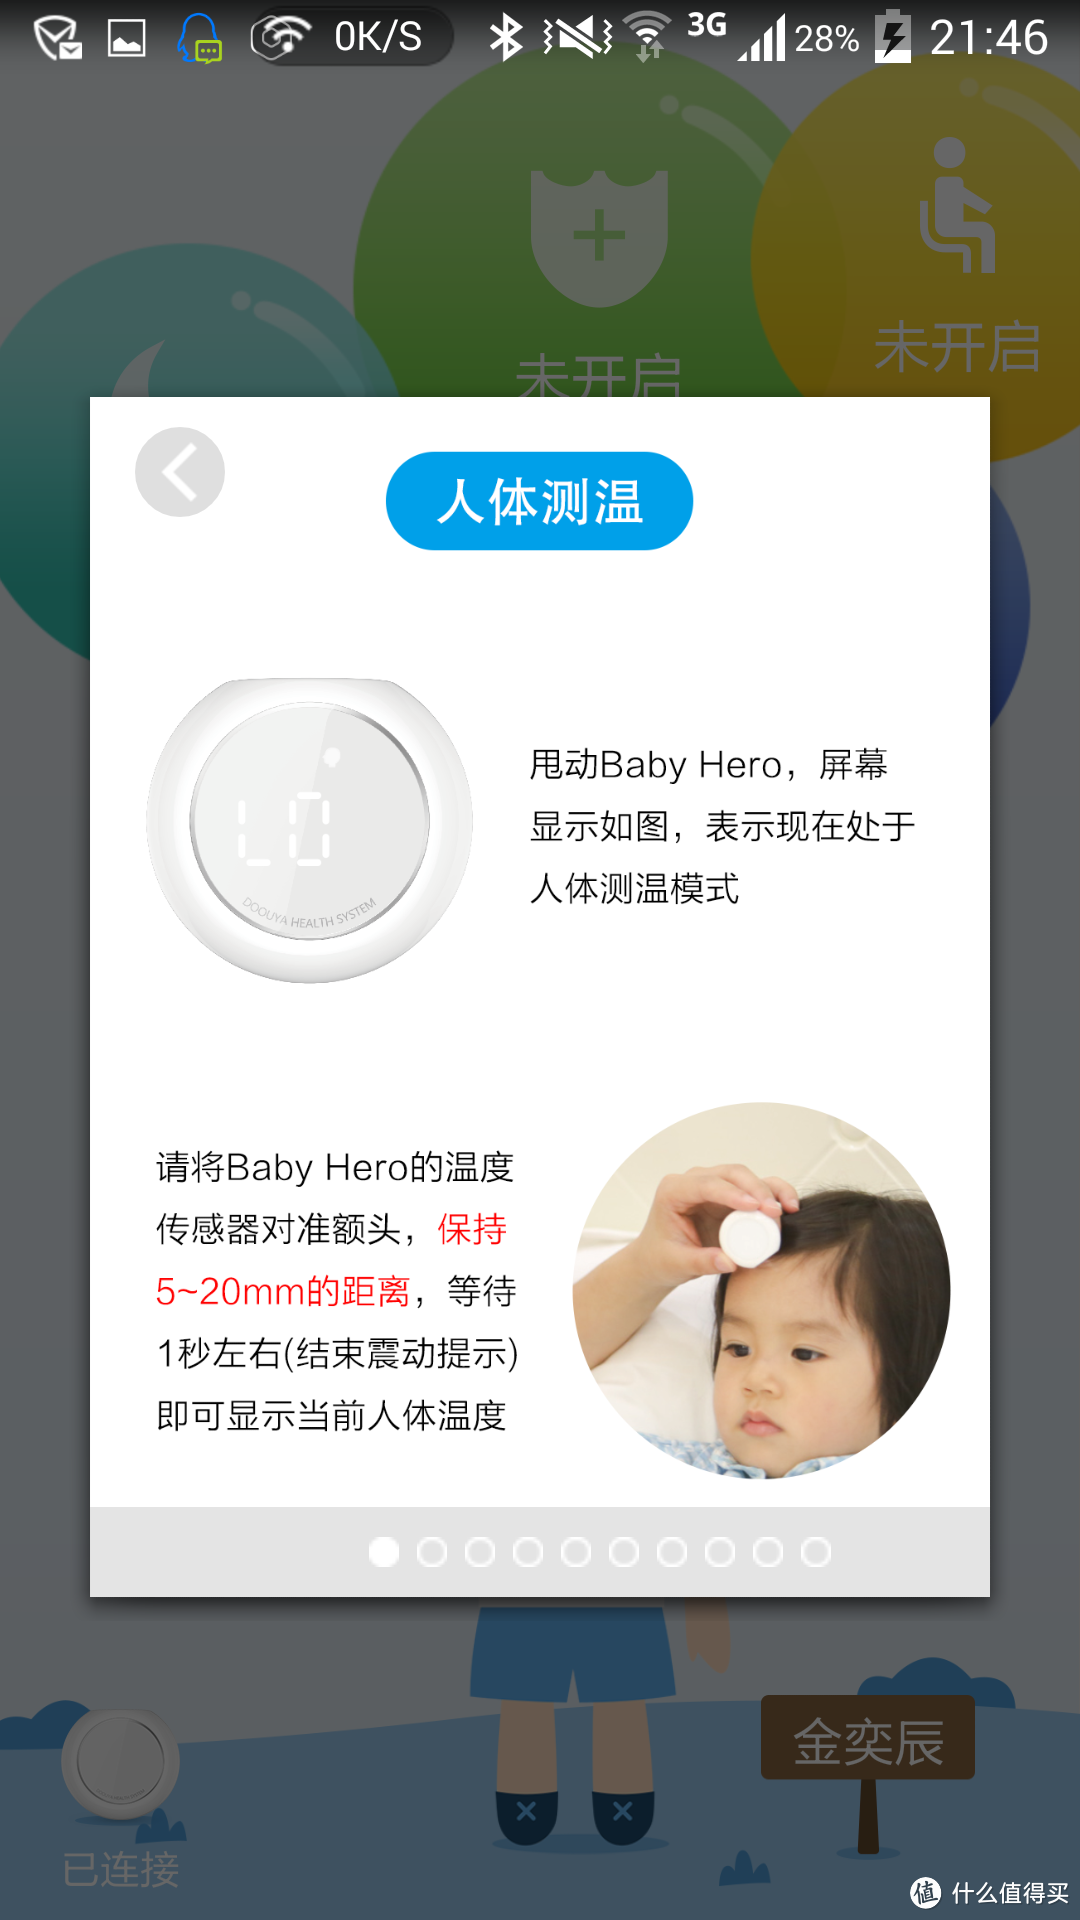 【硬件创意十足，软件尚待改进】DOOUYA Baby Hero 智能时代养娃助手测评报告